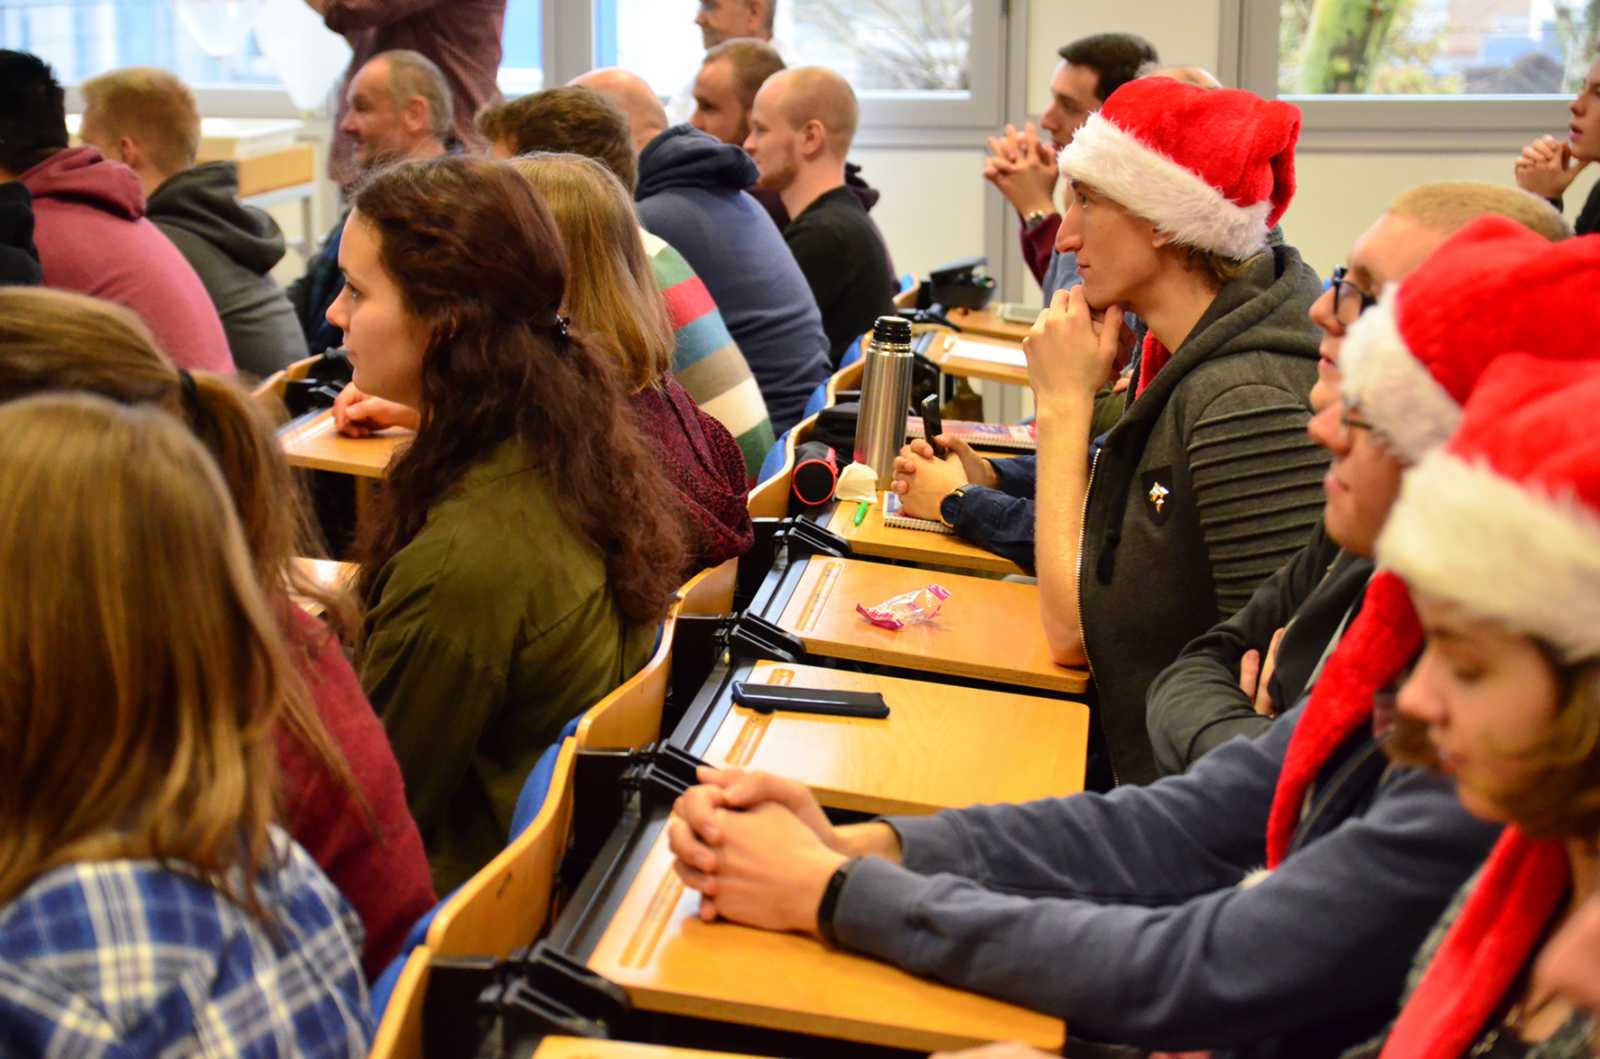 Passend zur Weihnachtsvorlesung kamen ein paar Studierende sogar mit Weihnachtsmannmützen vorbei. (Foto: FH Münster/Pressestelle)